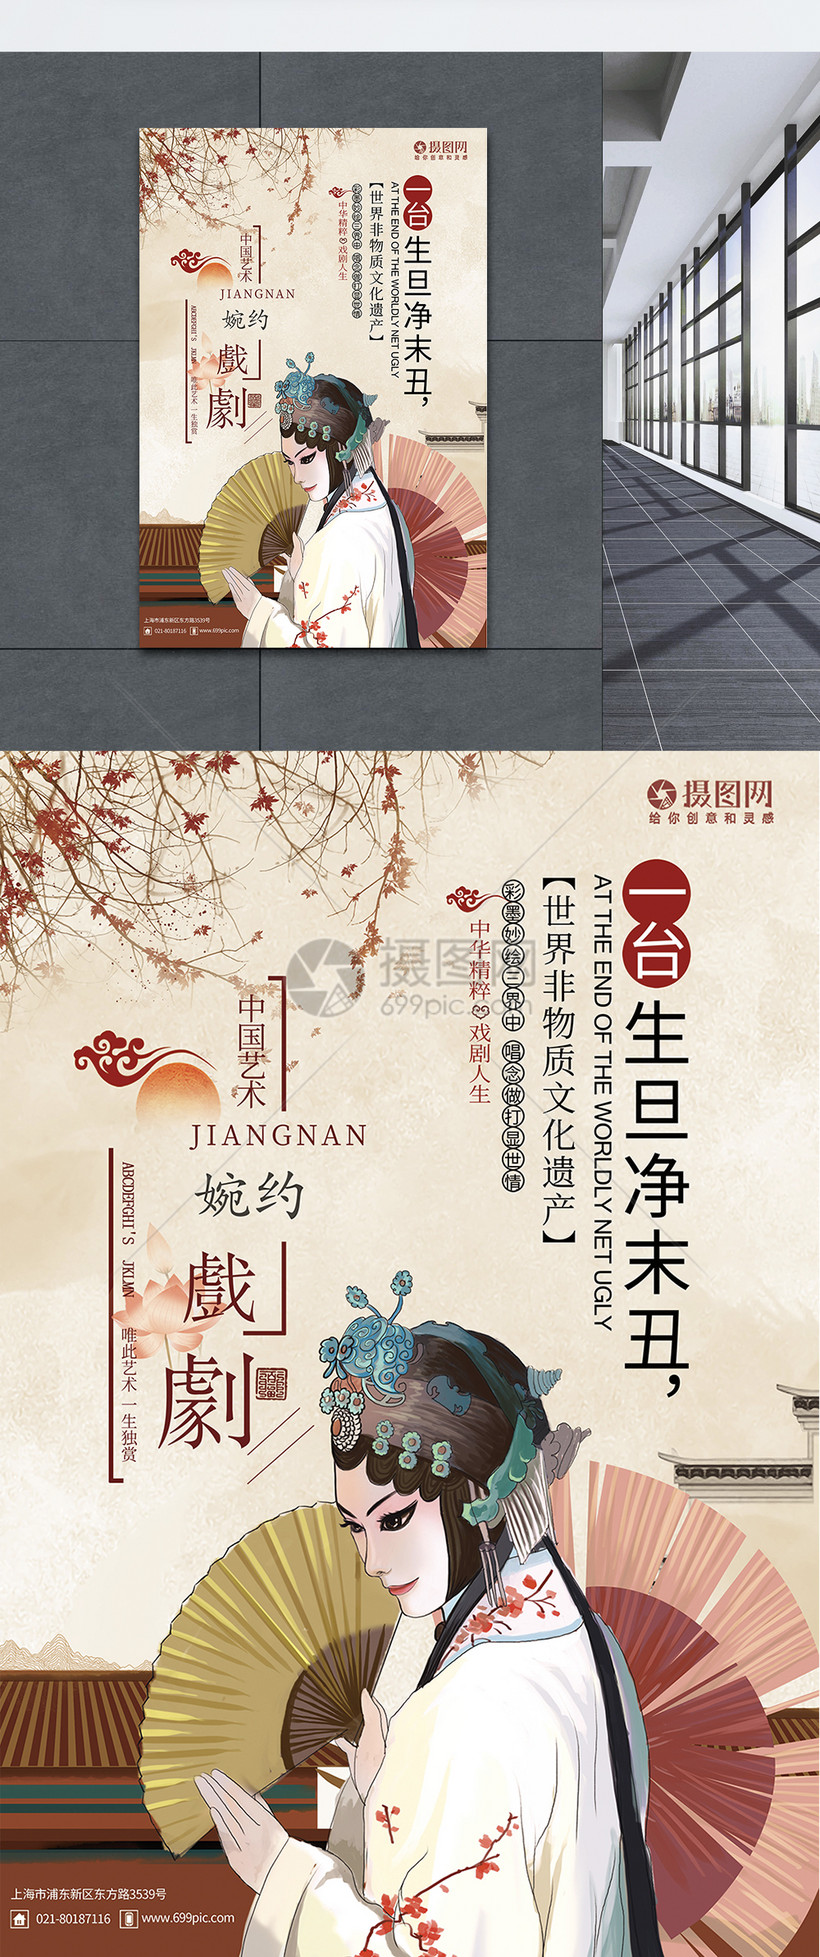 中国传统文化戏剧海报图片